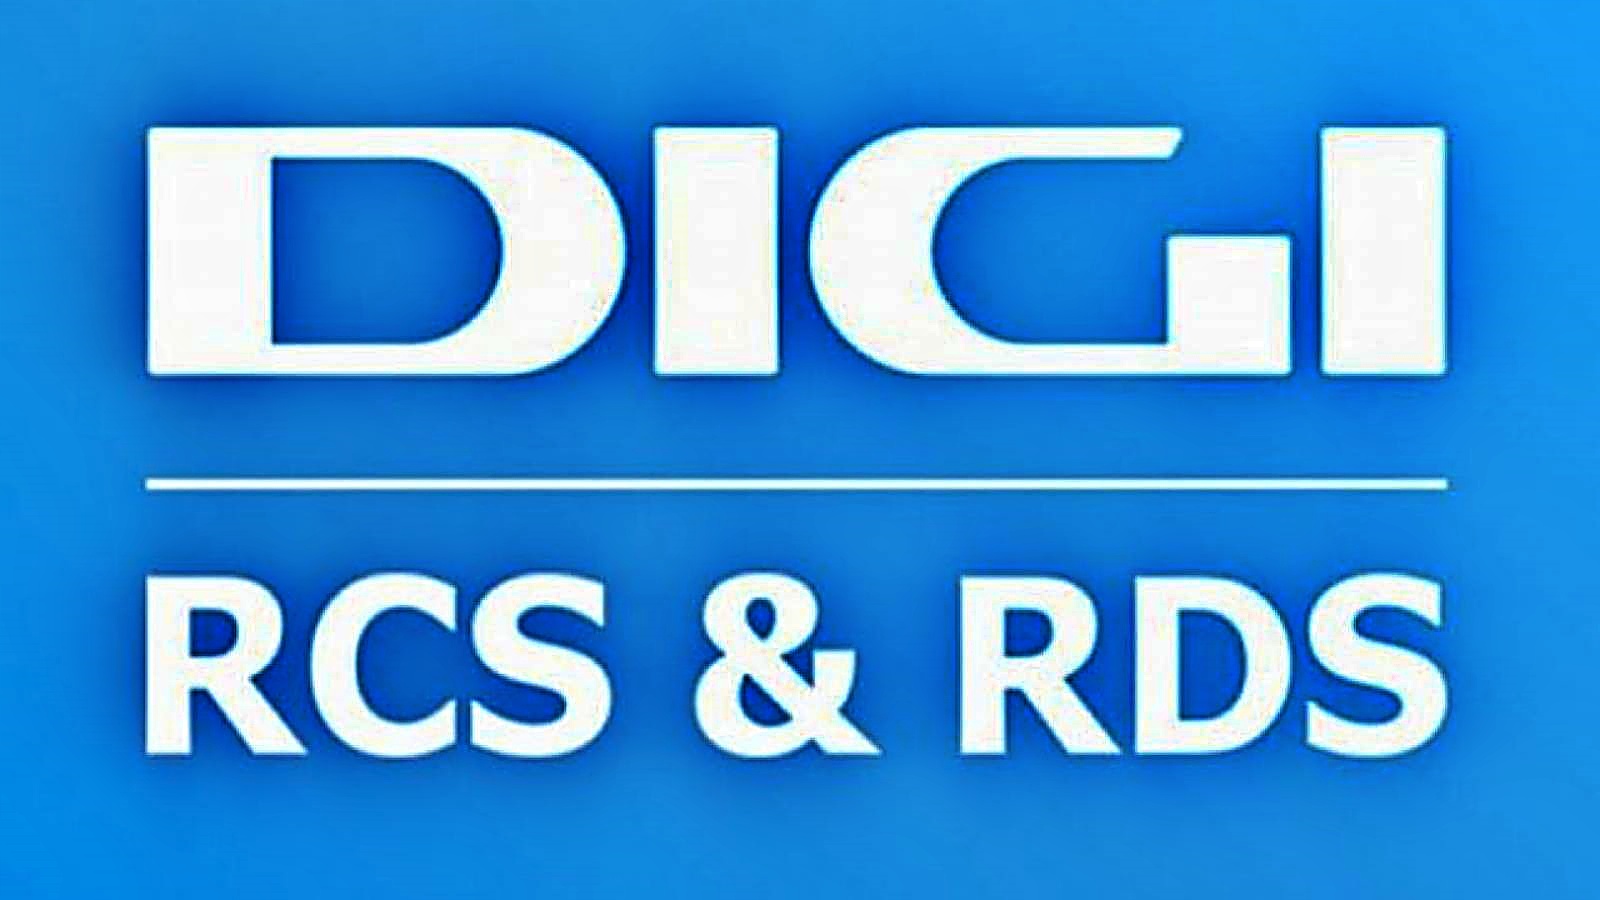 RCS & RDS officielle meddelelse BLACK FRIDAY rabatter